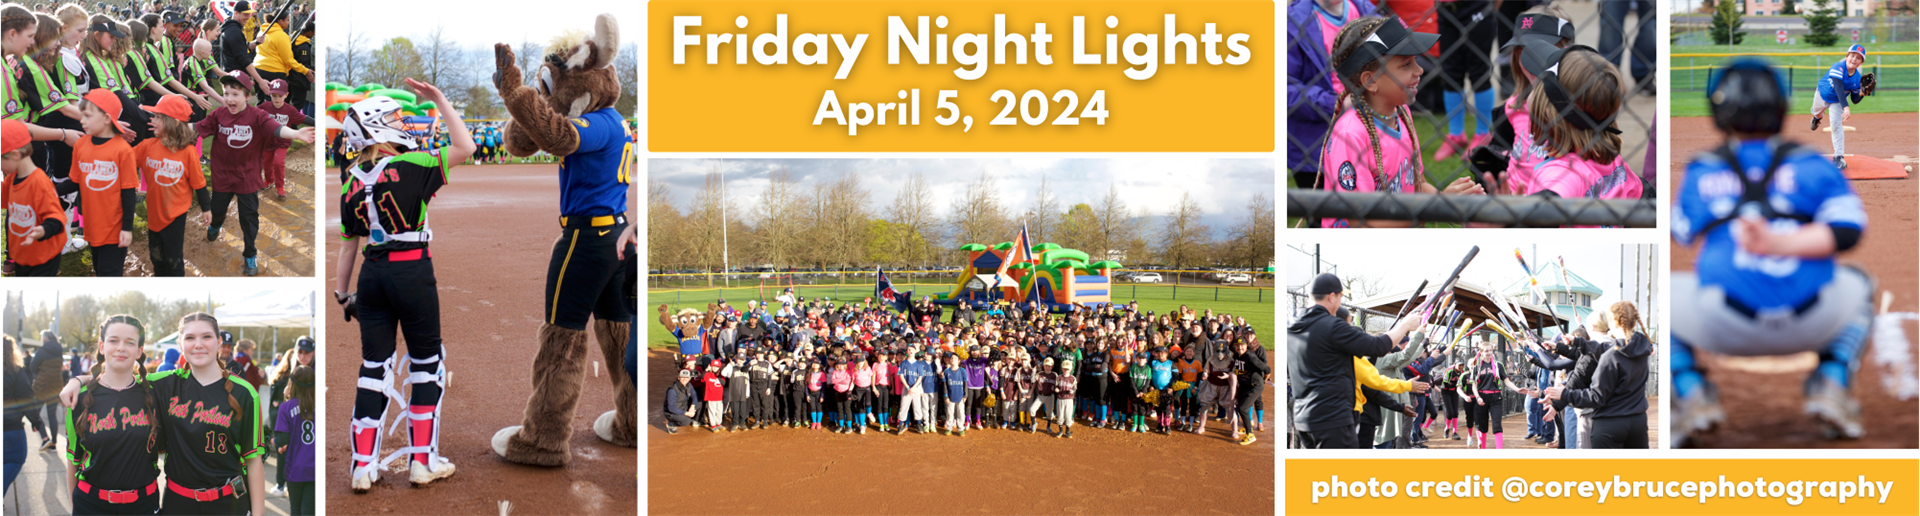 Friday Night Lights - April 5, 2024